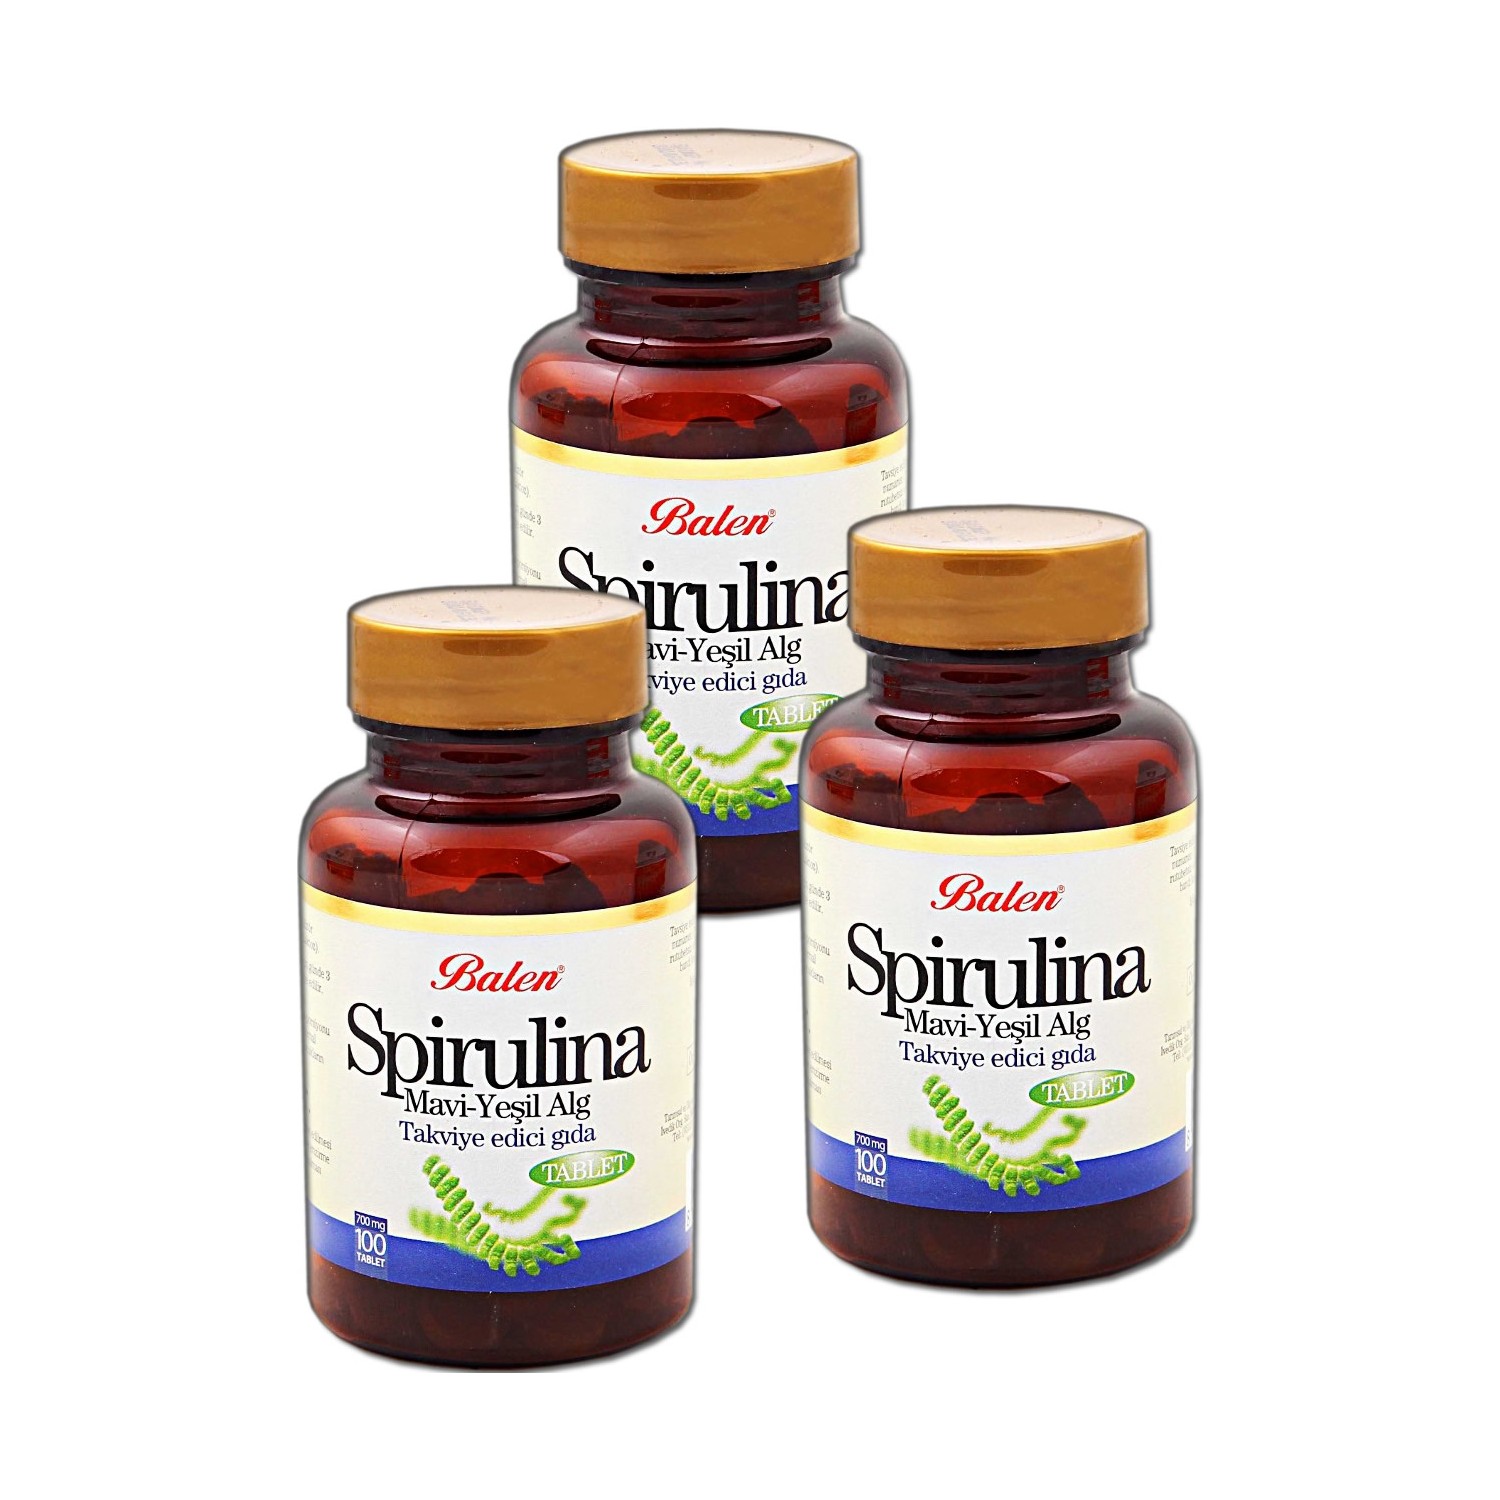 Пищевая добавка Balen Спирулина 700 мг, 3 упаковки по 100 капсул цена и фото